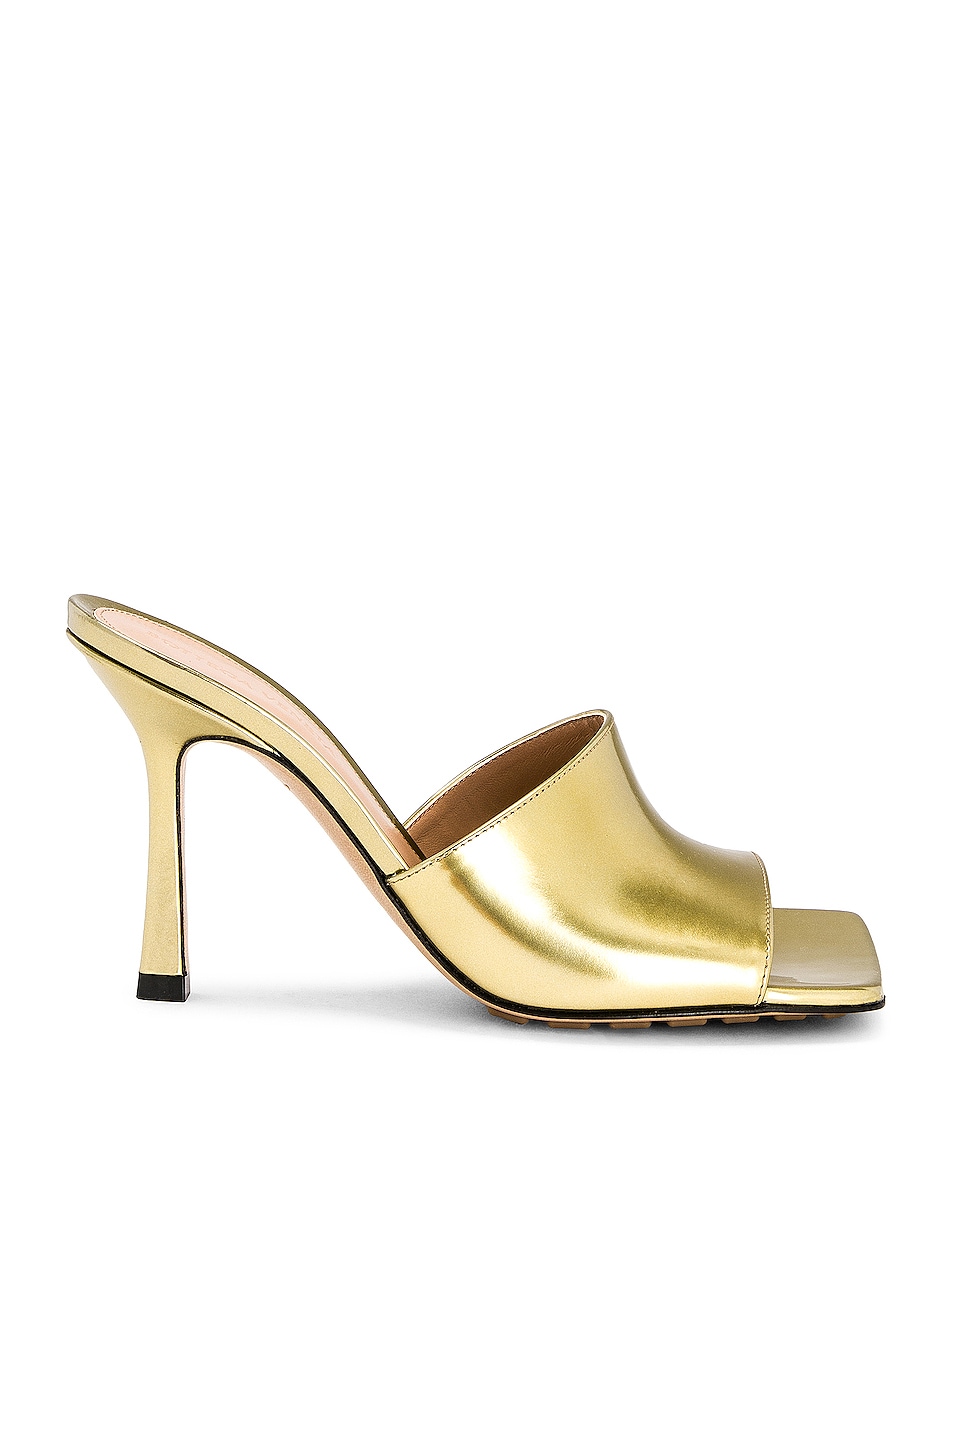 Bottega Veneta Stretch Mule Sandals in Gold | FWRD